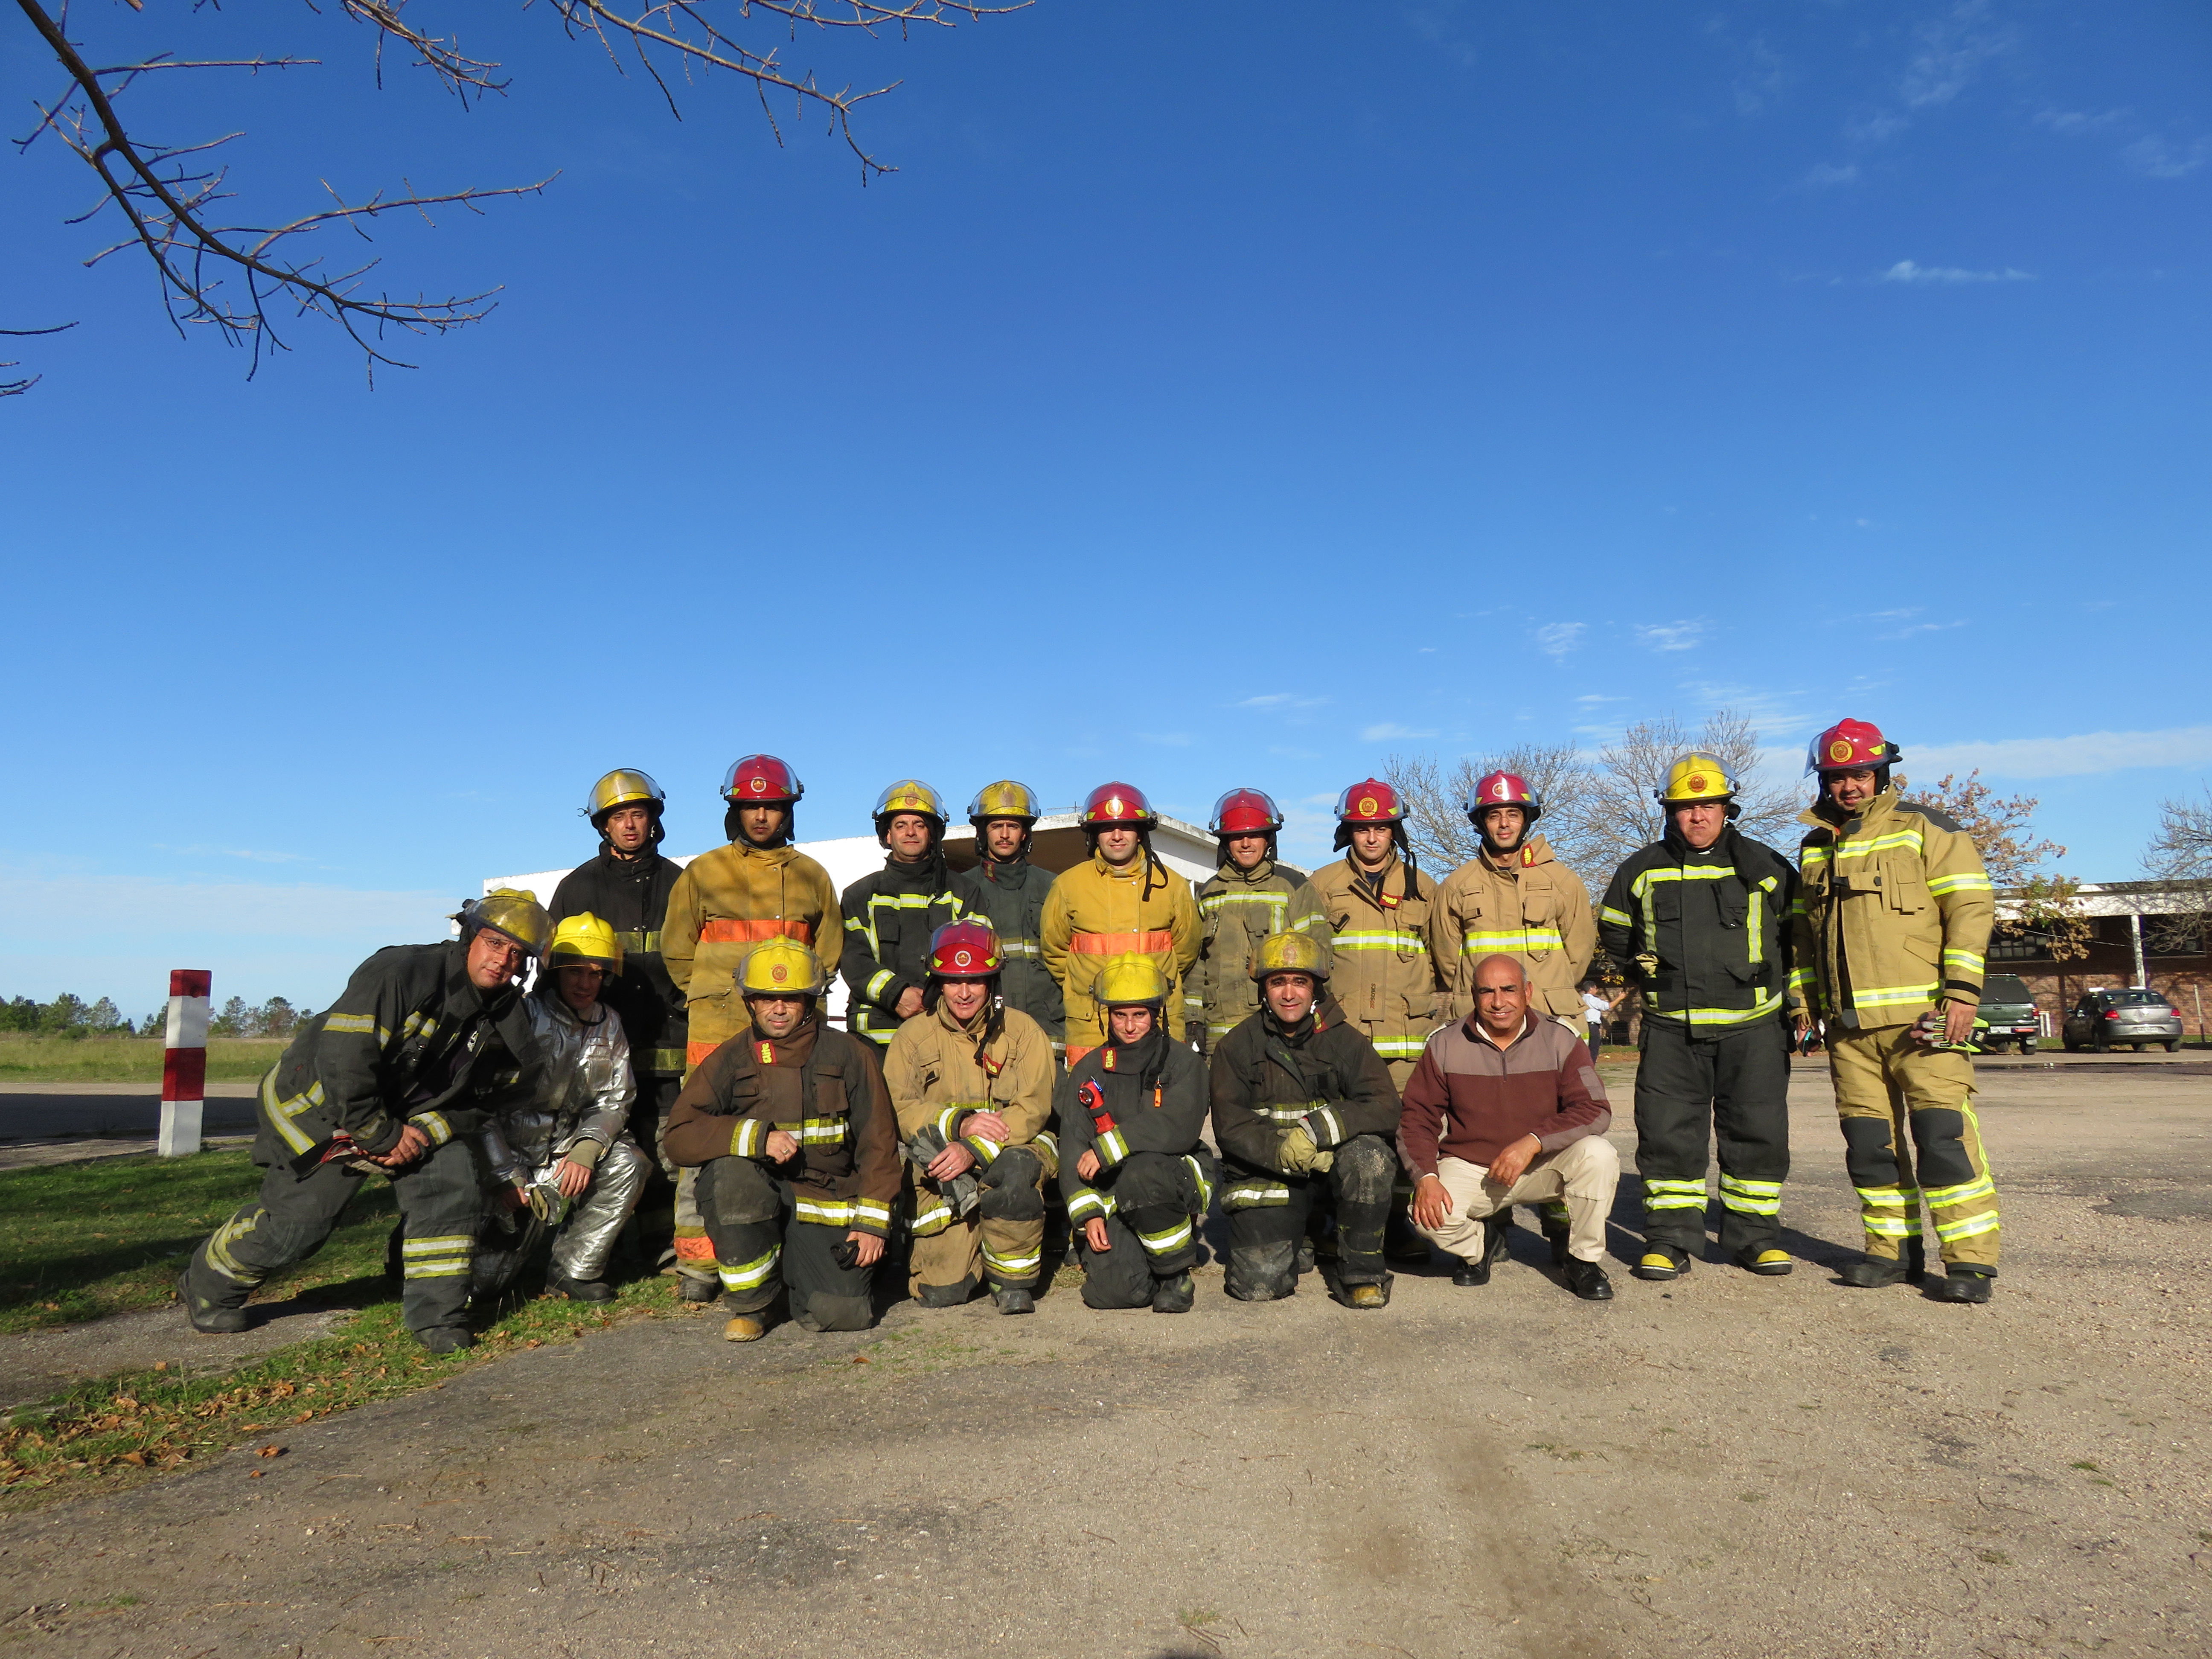 IMG_20230511_3923-JhjiREpK.jpg - El pasado jueves 11 de mayo culminó la &#034;Capacitación para bomberos sobre manejo de incidentes relacionados con la movilidad eléctrica&#034; en donde se capacitaron a 25 bomberos en la Base Aérea de Santa Bernardina del departamento de Durazno. Esta capacitación es la continuación del primer curso regional que organizó la plataforma MOVE del Programa de la Naciones Unidas para el Medio Ambiente a finales de 2022 en Paraguay, donde participaron y se formaron dos bomberos instructores de Uruguay.